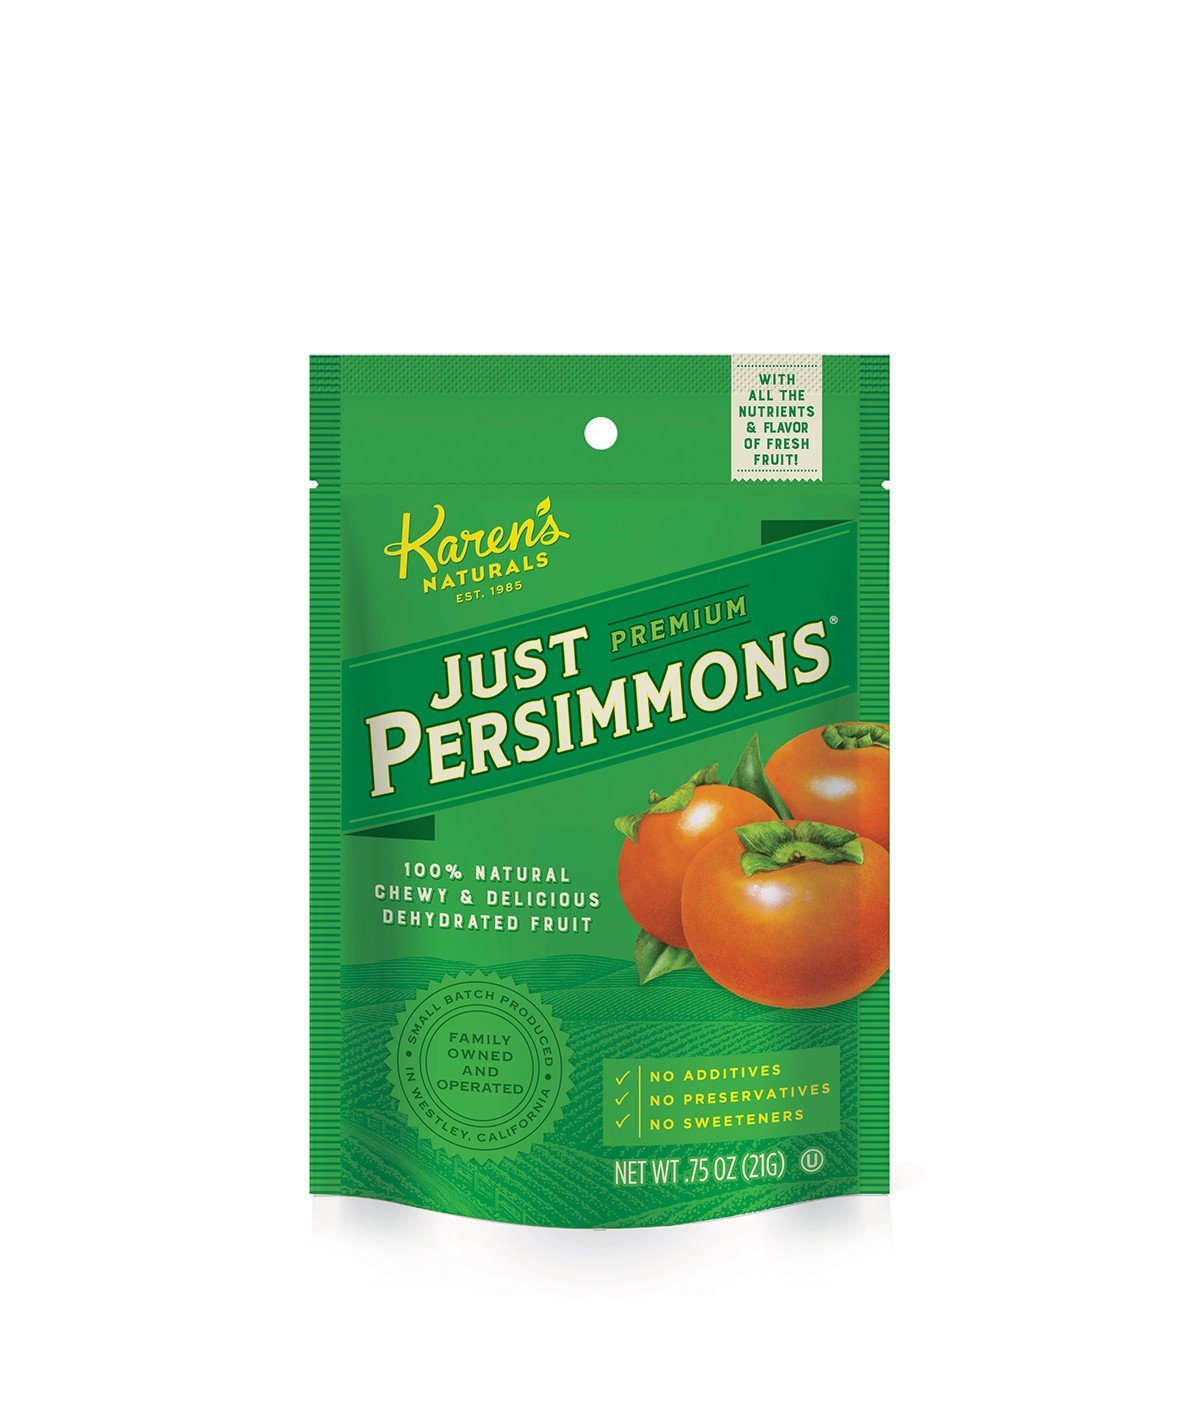 Just Persimmons - Karen's Naturals